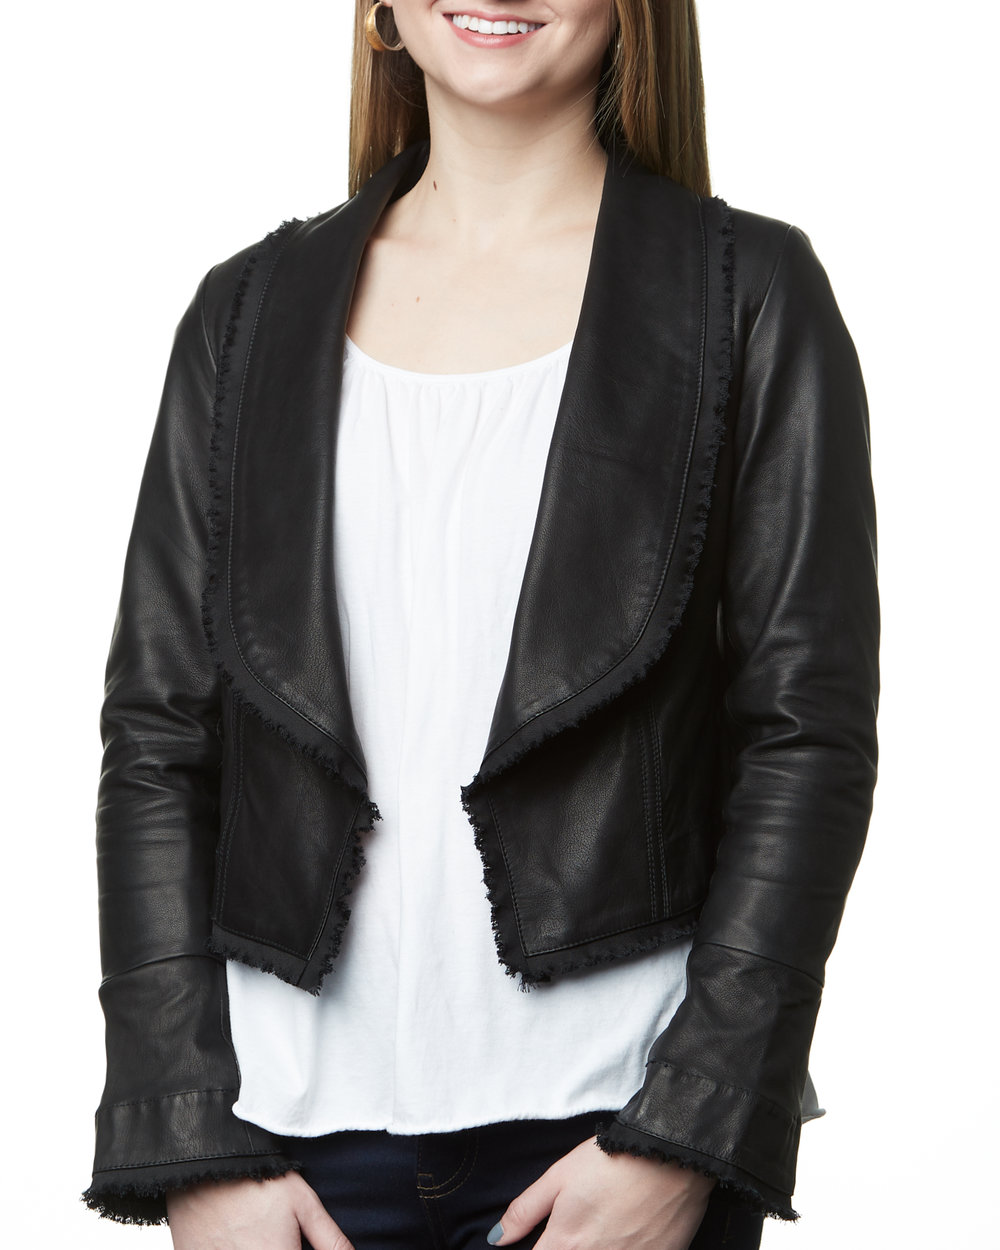 Antipoison convergentie cabine Camille Women's Leather Crop Jacket · Black — Sarah Stewart Women's  Clothing & Accessories